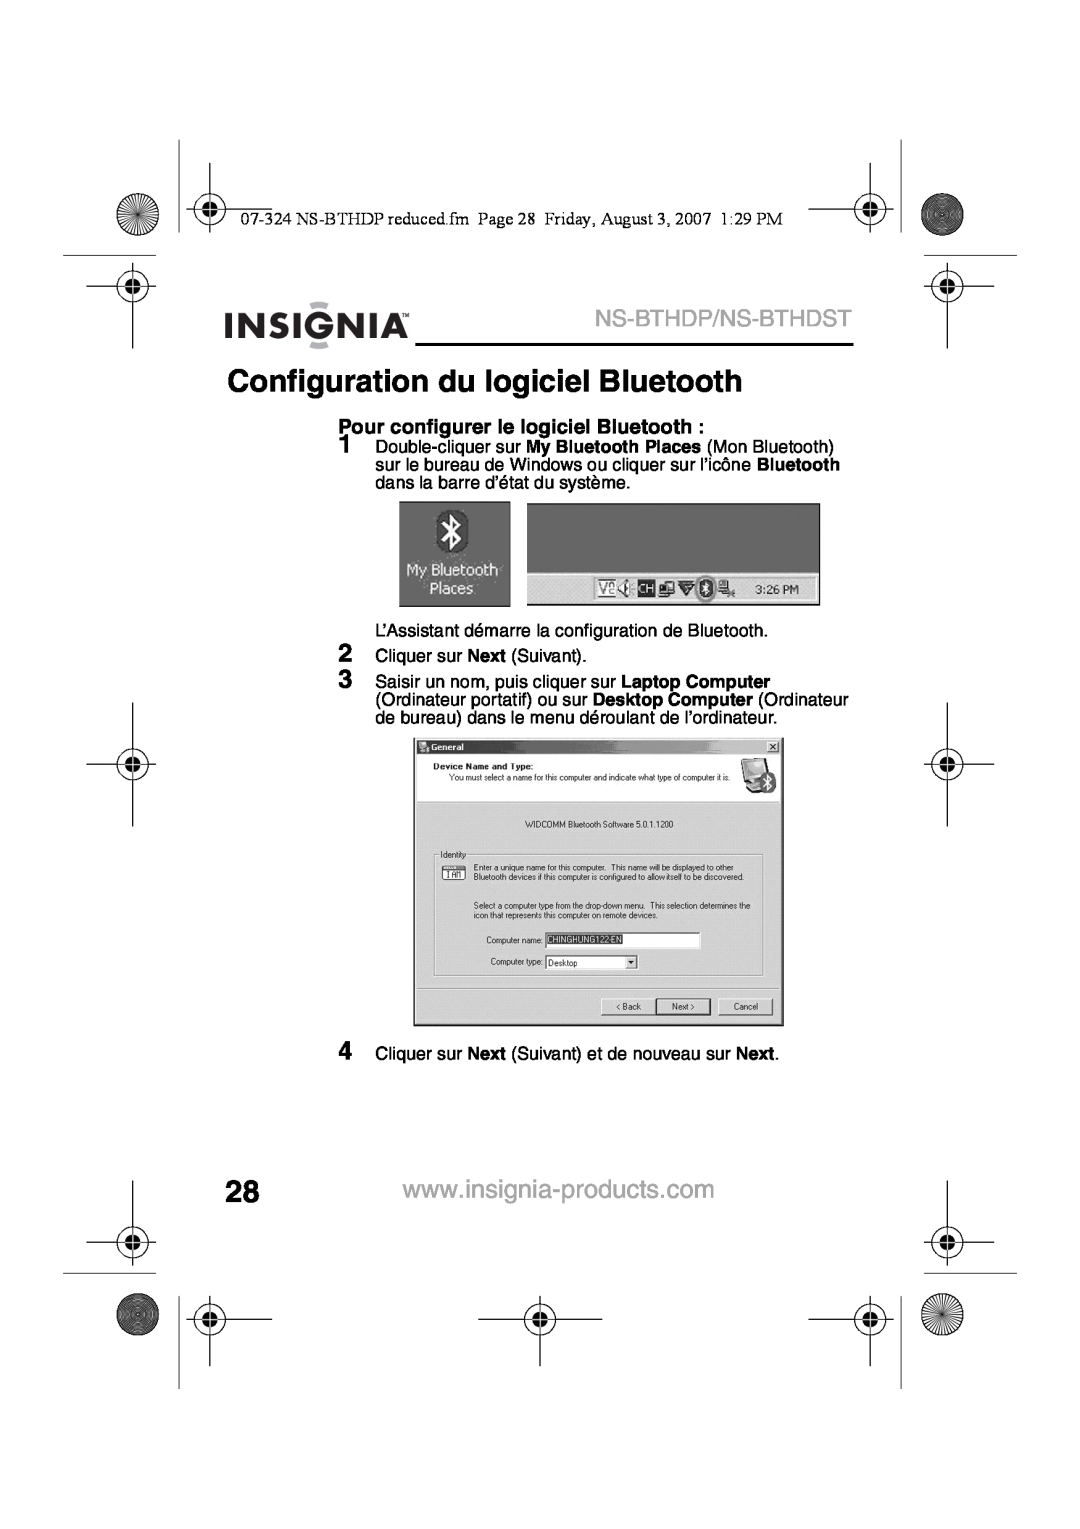 Insignia NS-BTHDST manual Configuration du logiciel Bluetooth, Ns-Bthdp/Ns-Bthdst, Pour configurer le logiciel Bluetooth 